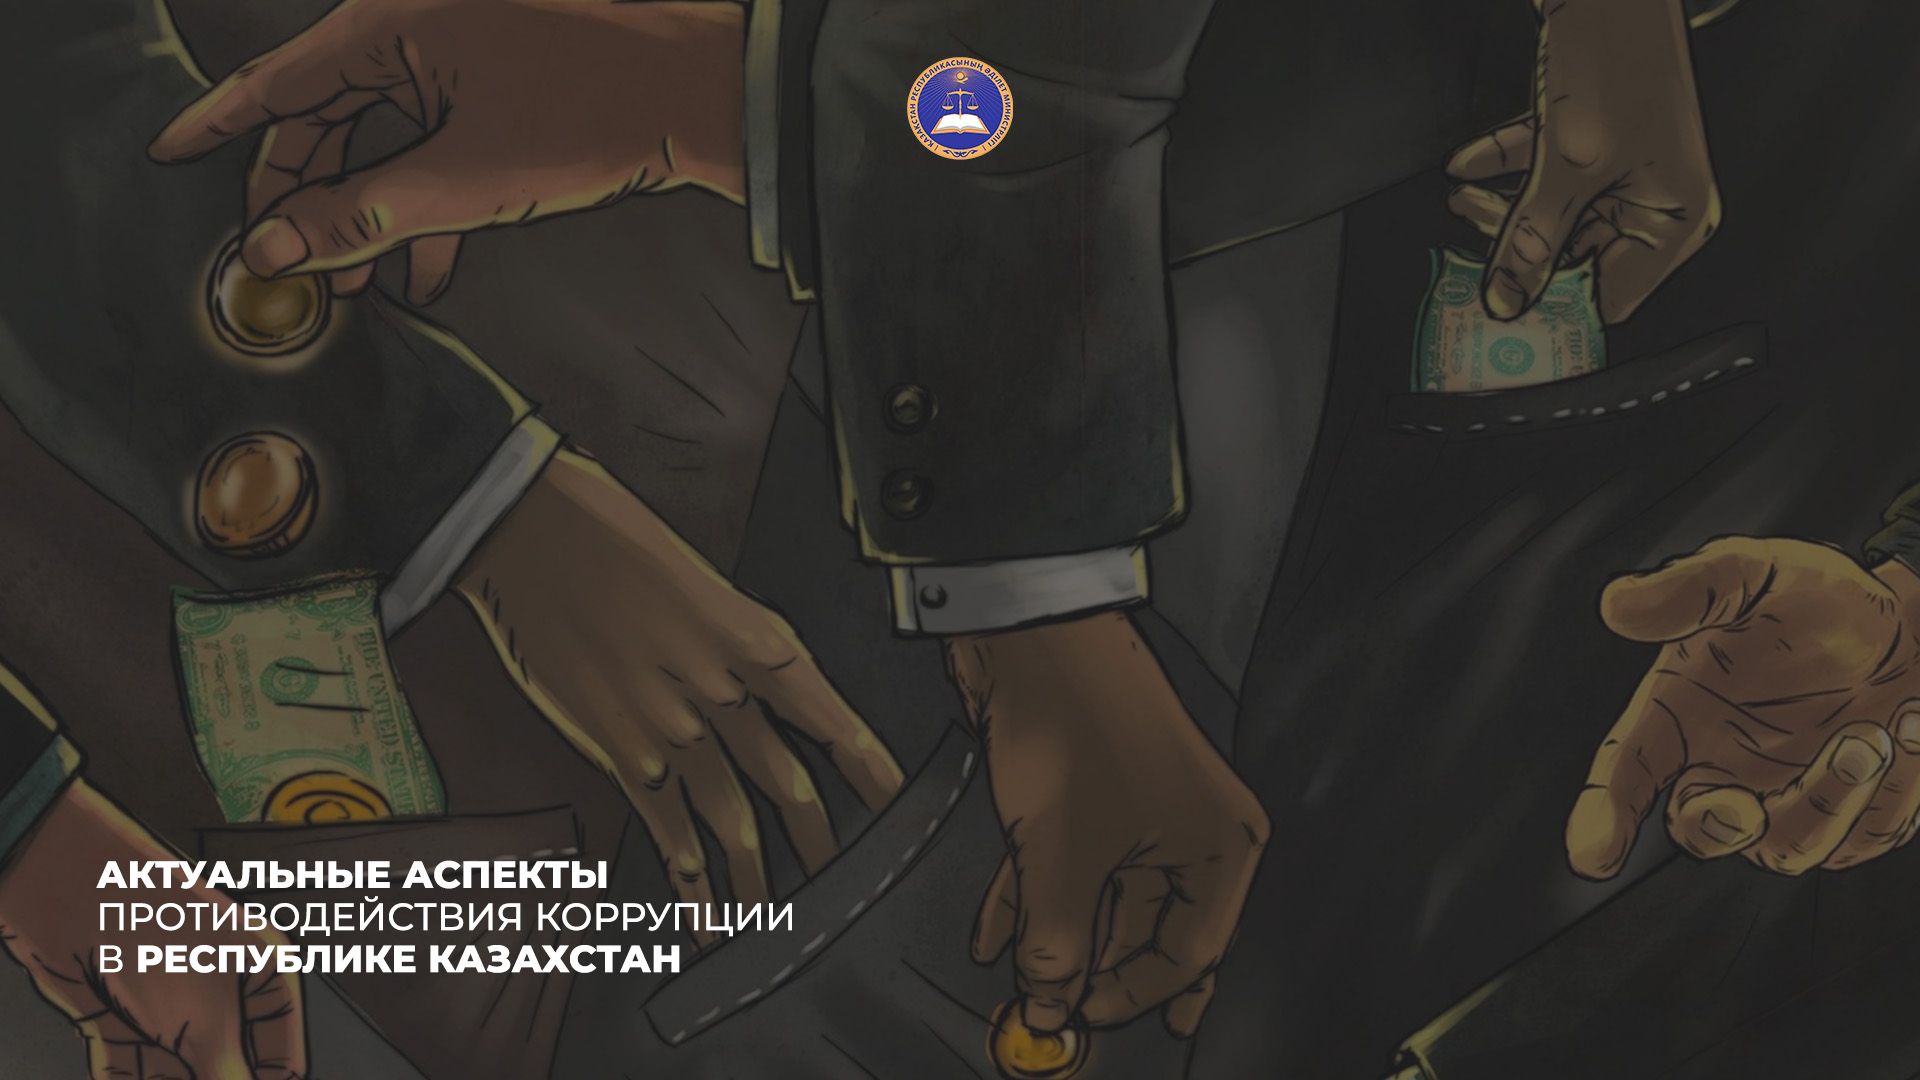 АКТУАЛЬНЫЕ АСПЕКТЫ ПРОТИВОДЕЙСТВИЯ КОРРУПЦИИ В РЕСПУБЛИКЕ КАЗАХСТАН